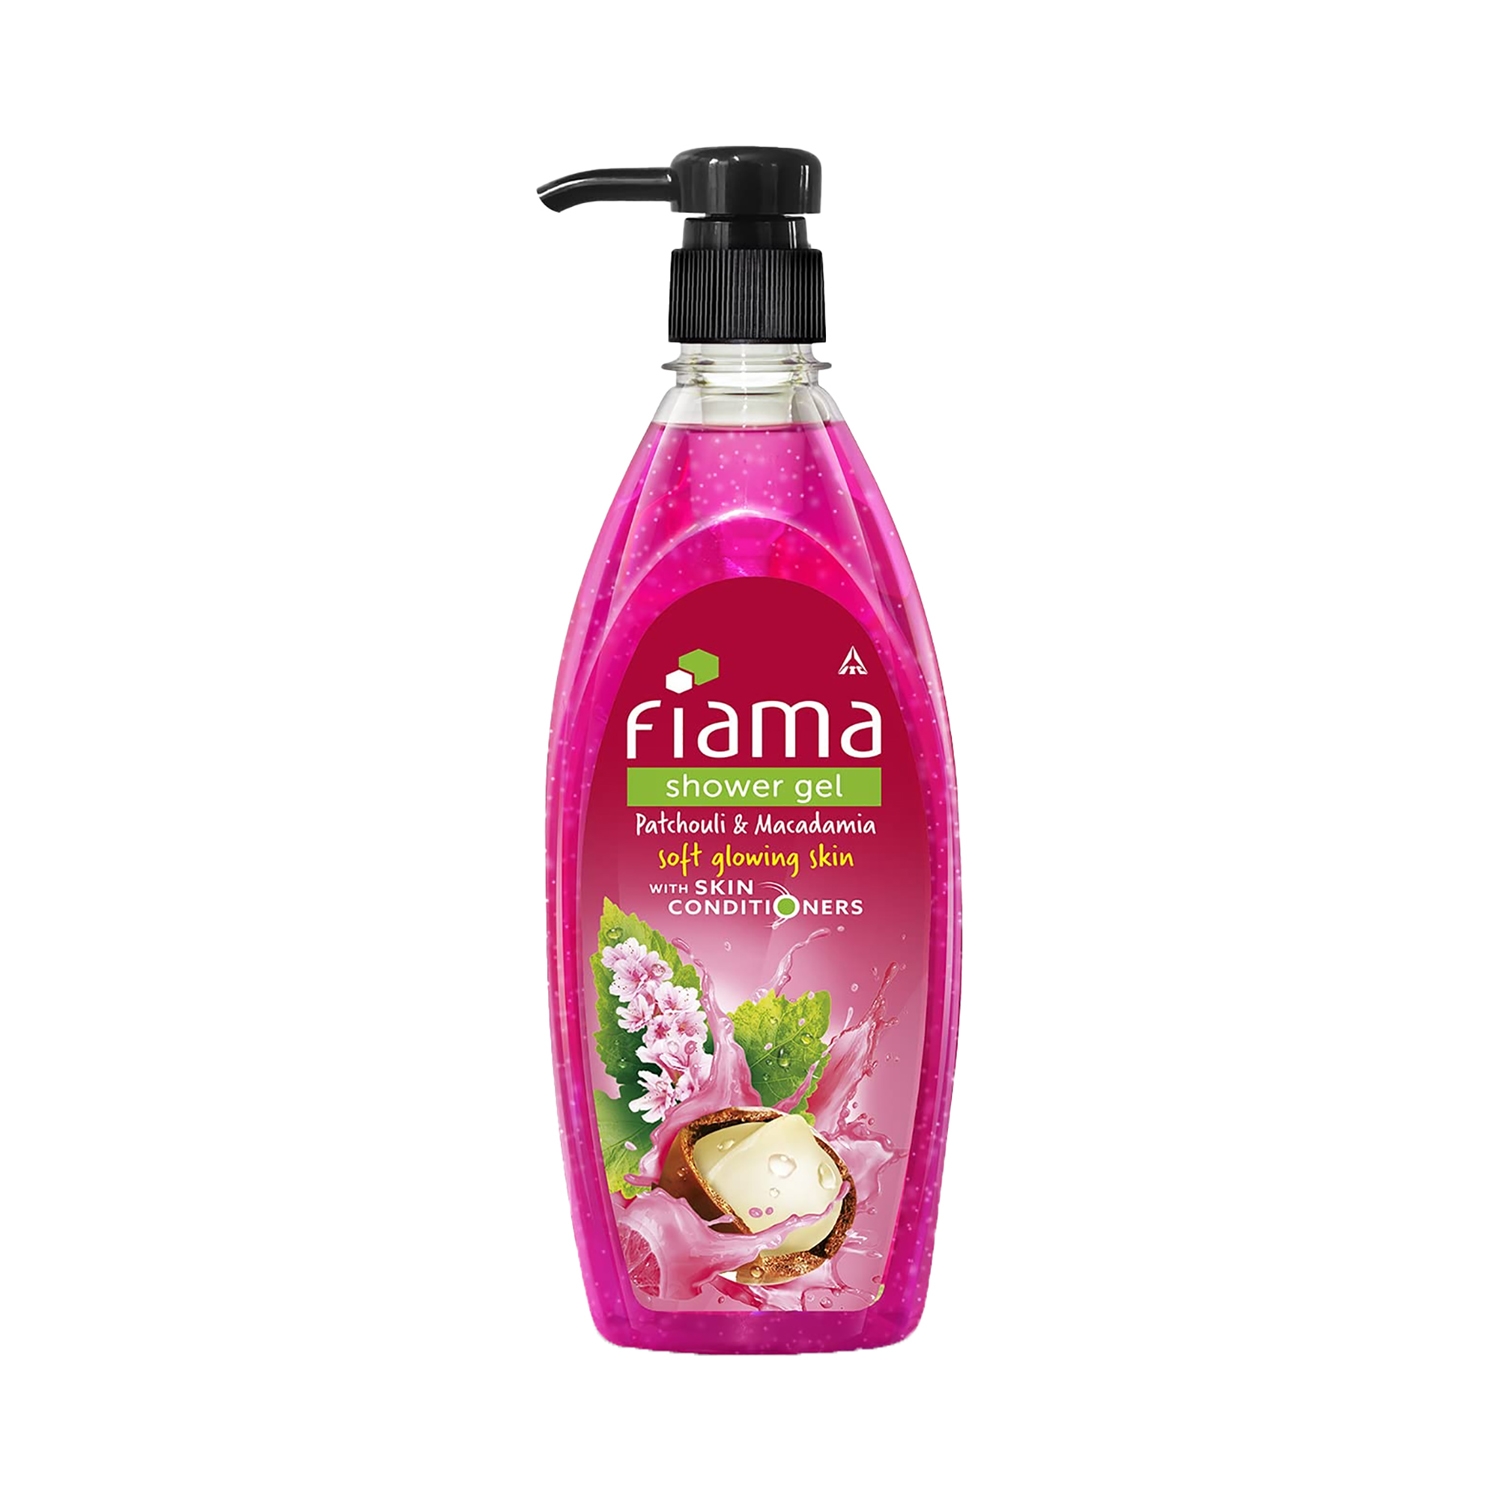 Fiama | Fiama Patchouli & Macadamia Shower Gel With Skin Conditioners (500ml)